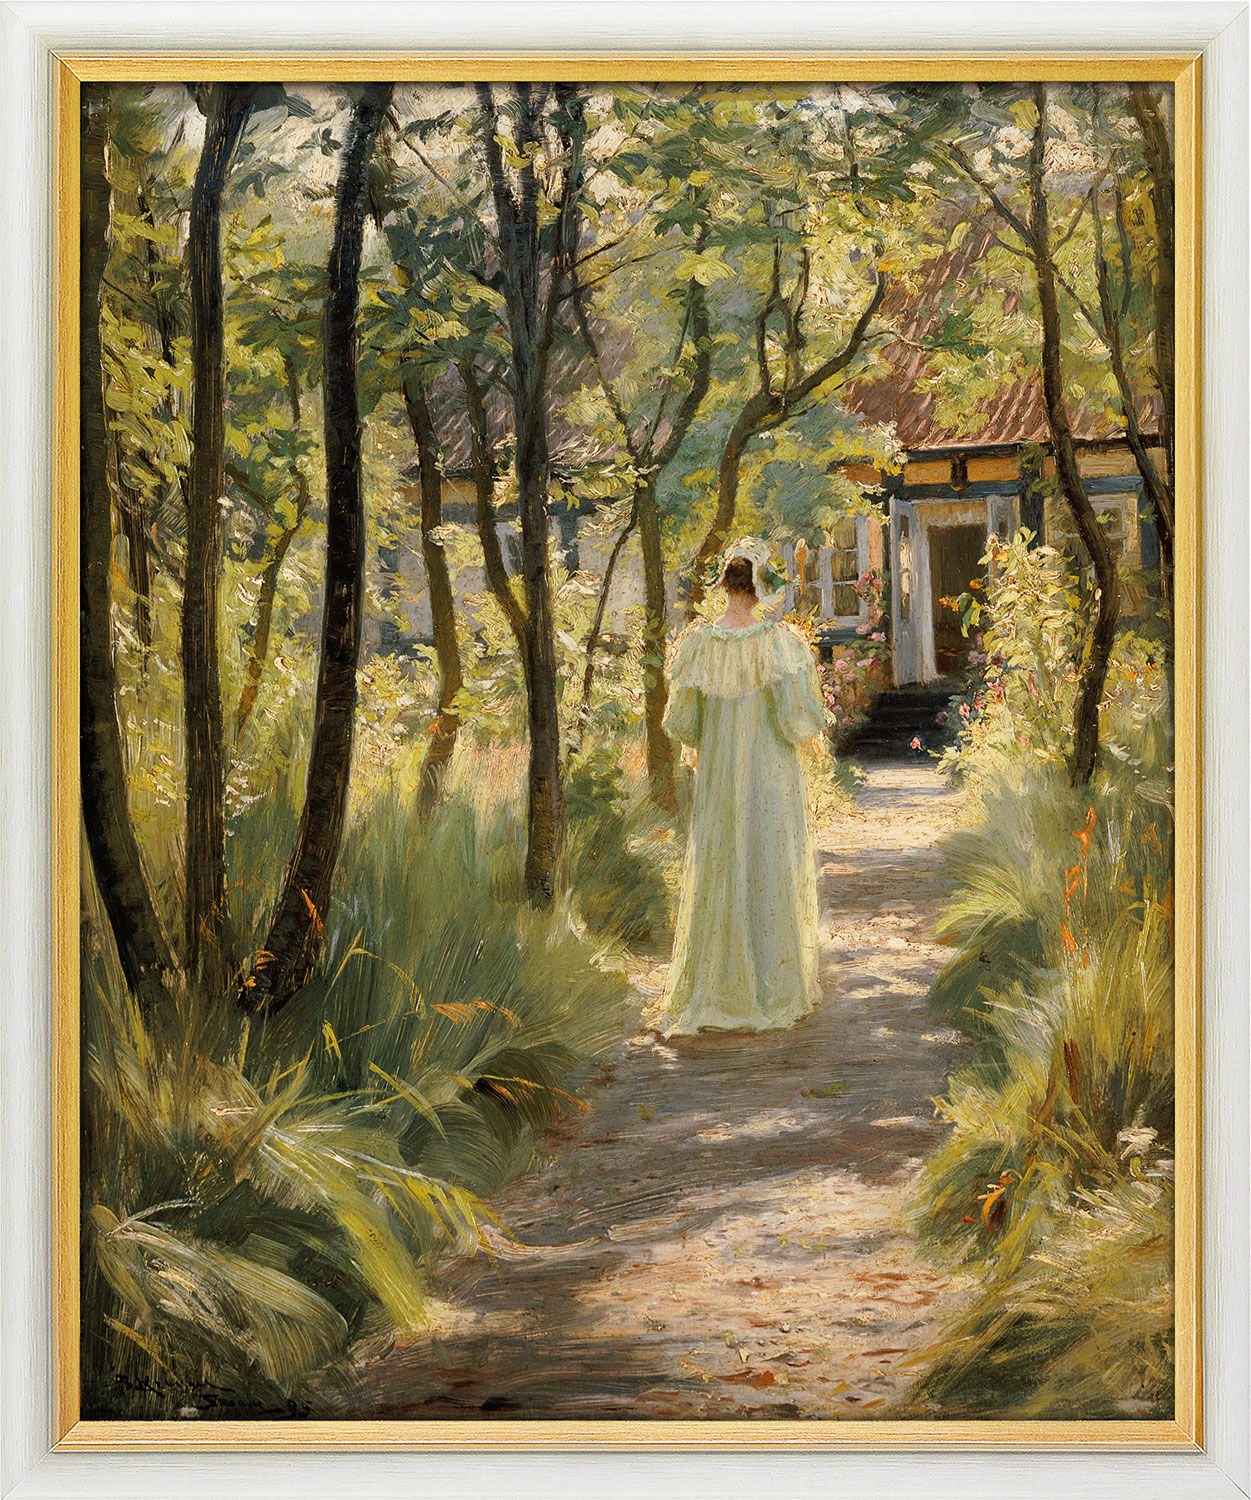 Beeld "Marie, de vrouw van de kunstenaar, in de tuin" (1895), ingelijst von Peder Severin Kroyer